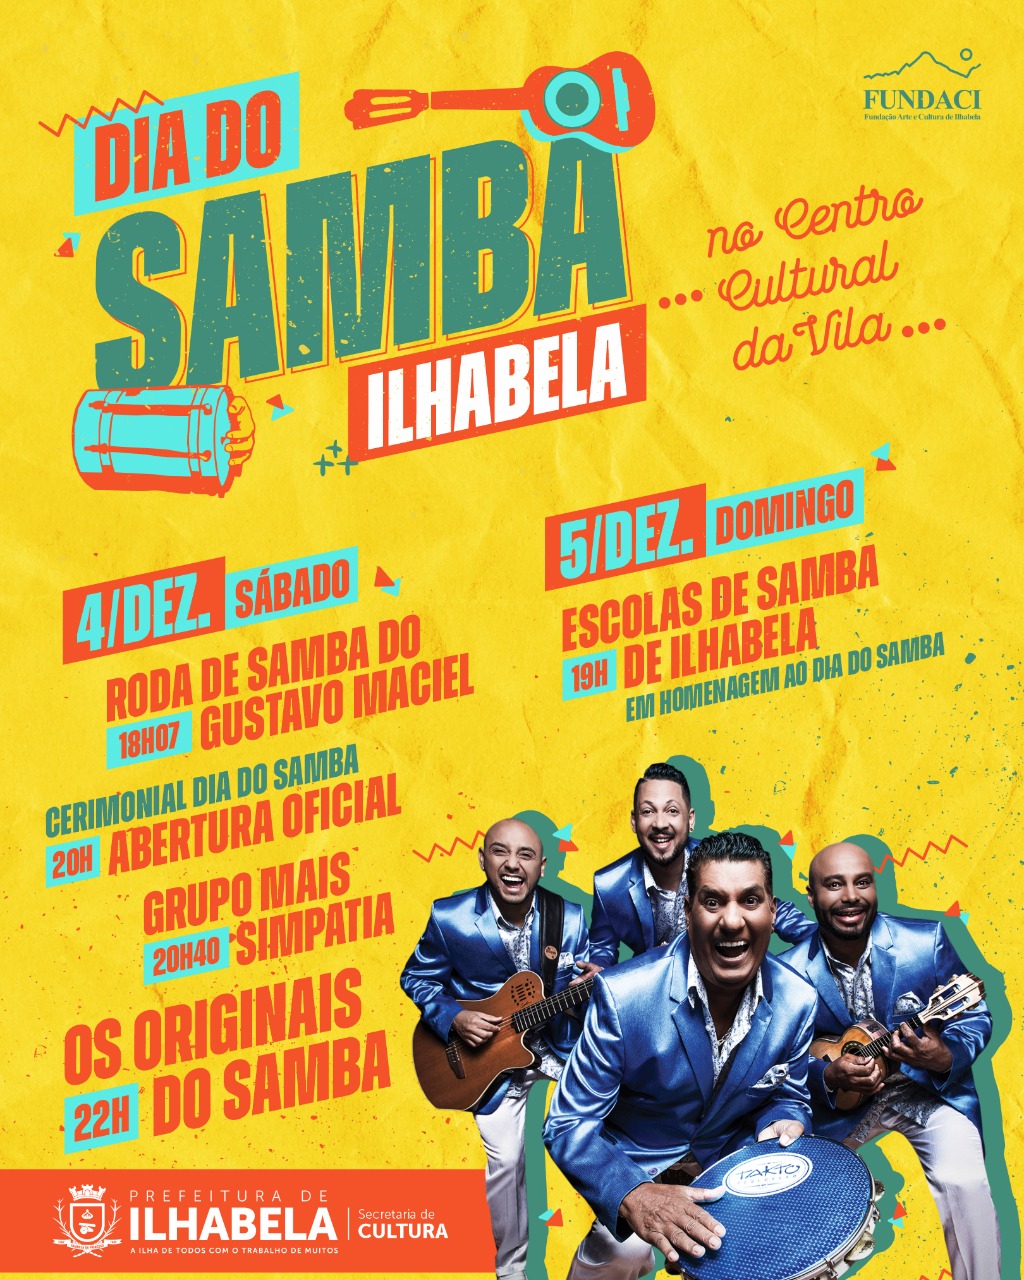 Ilhabela comemora Dia do Samba com show de “Os Originais do Samba” e bandas locais no final de semana